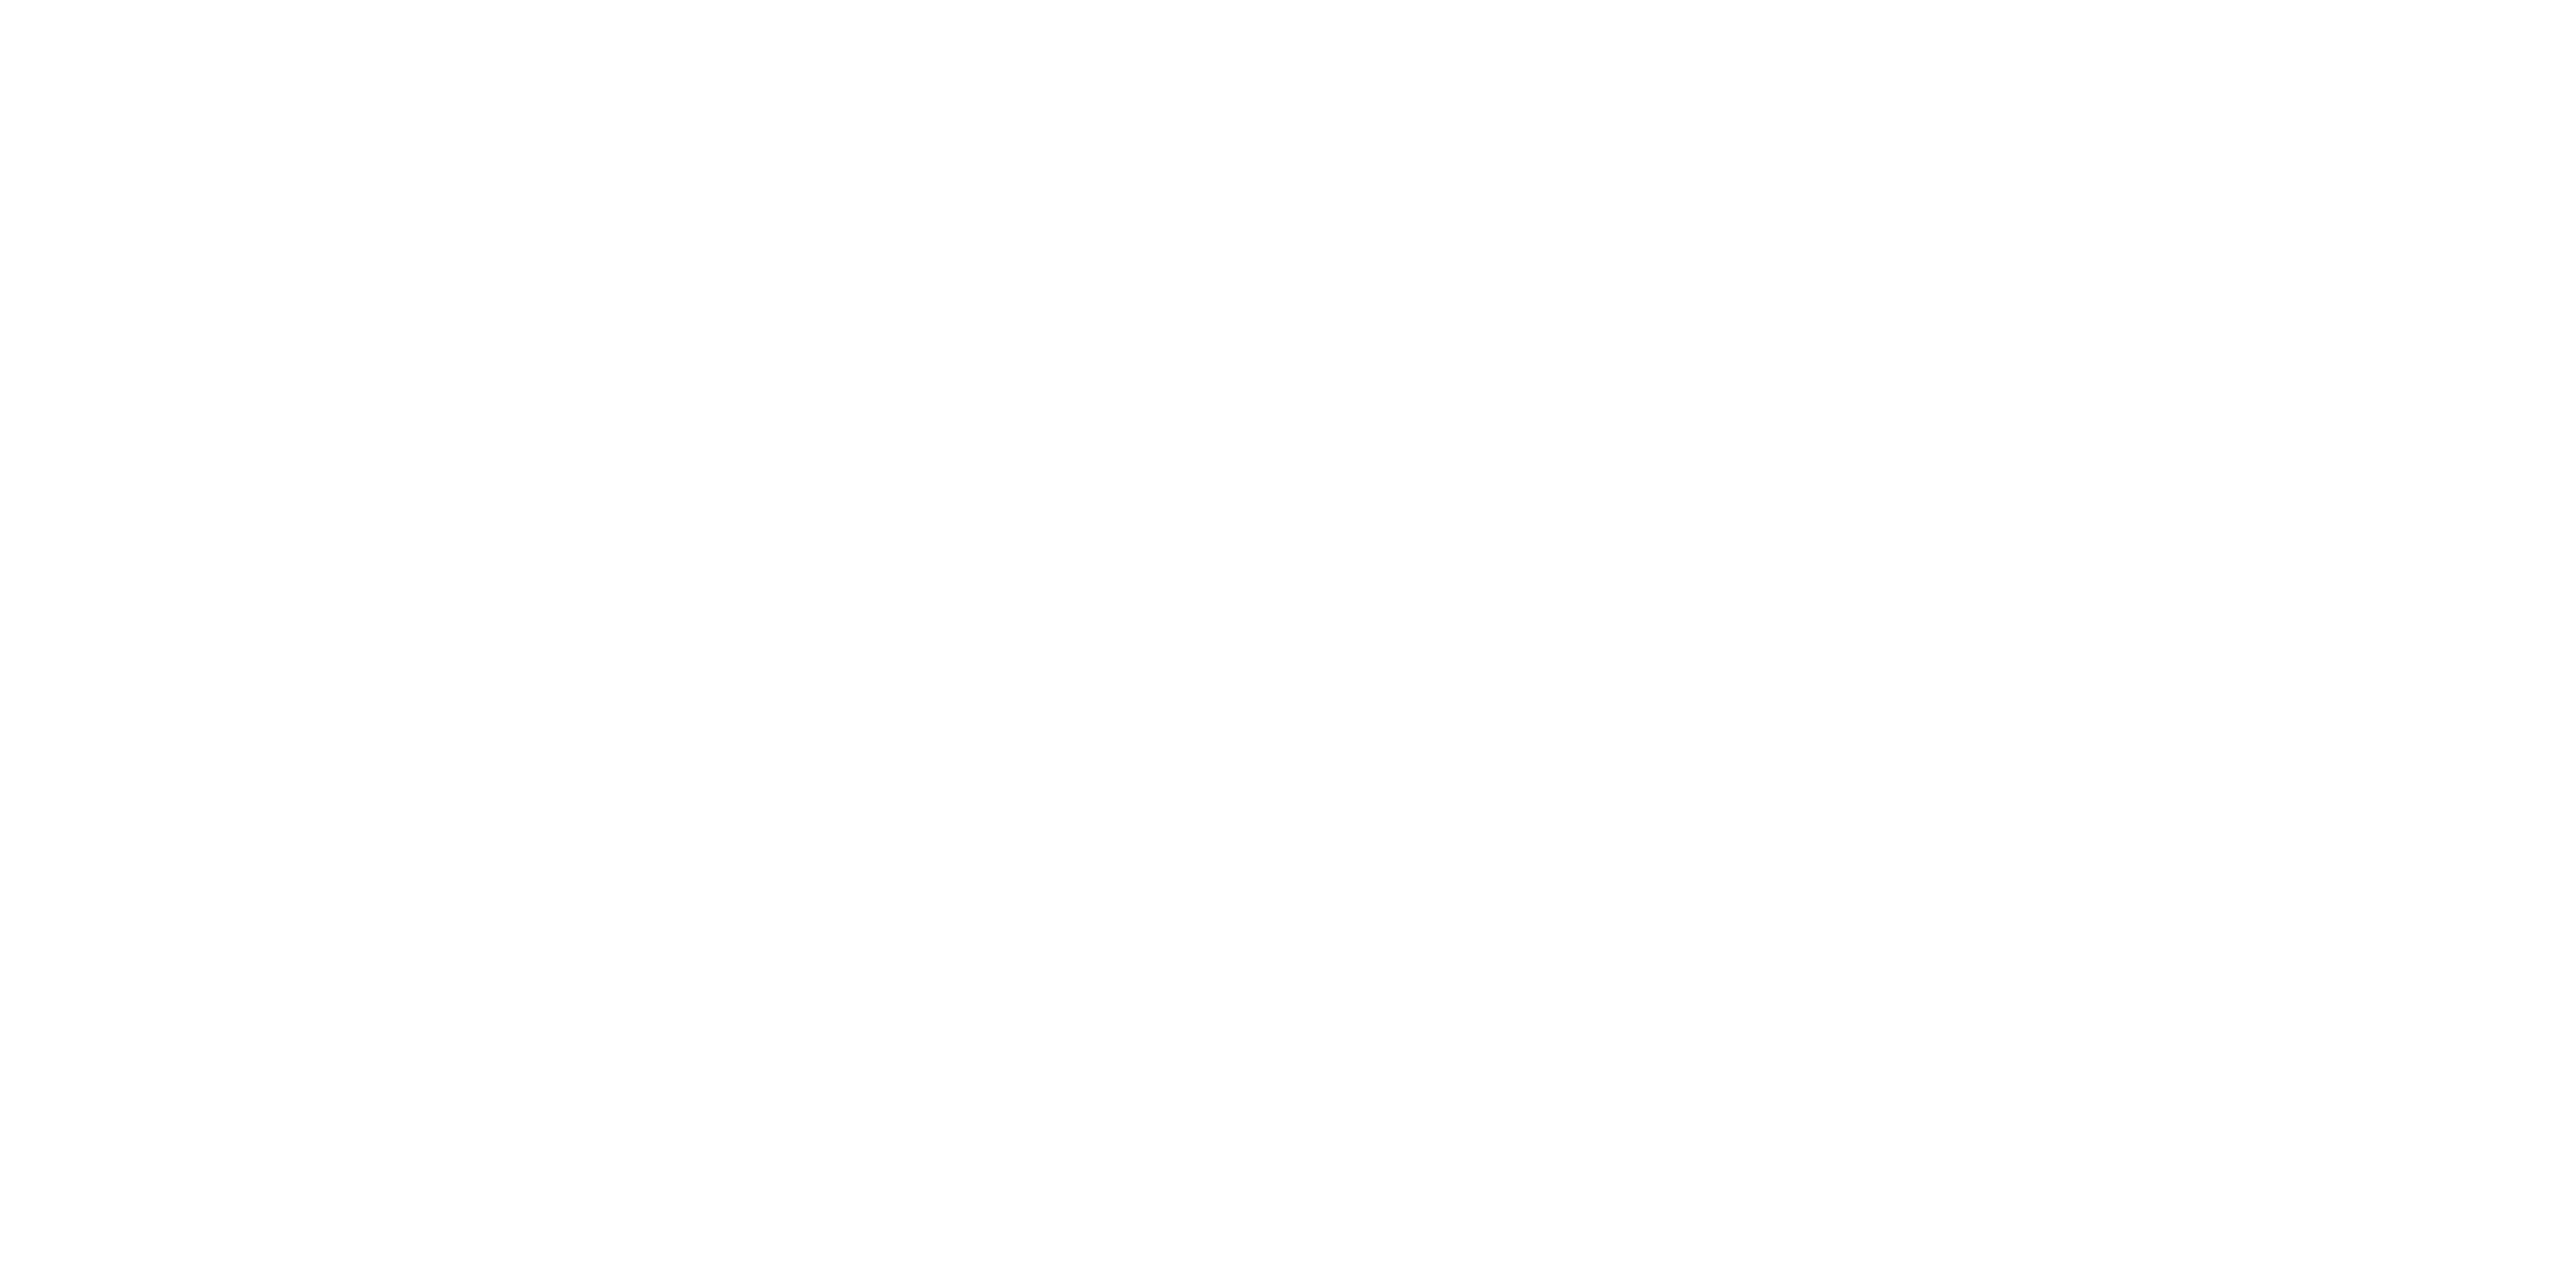 Reminisce Festival Logo